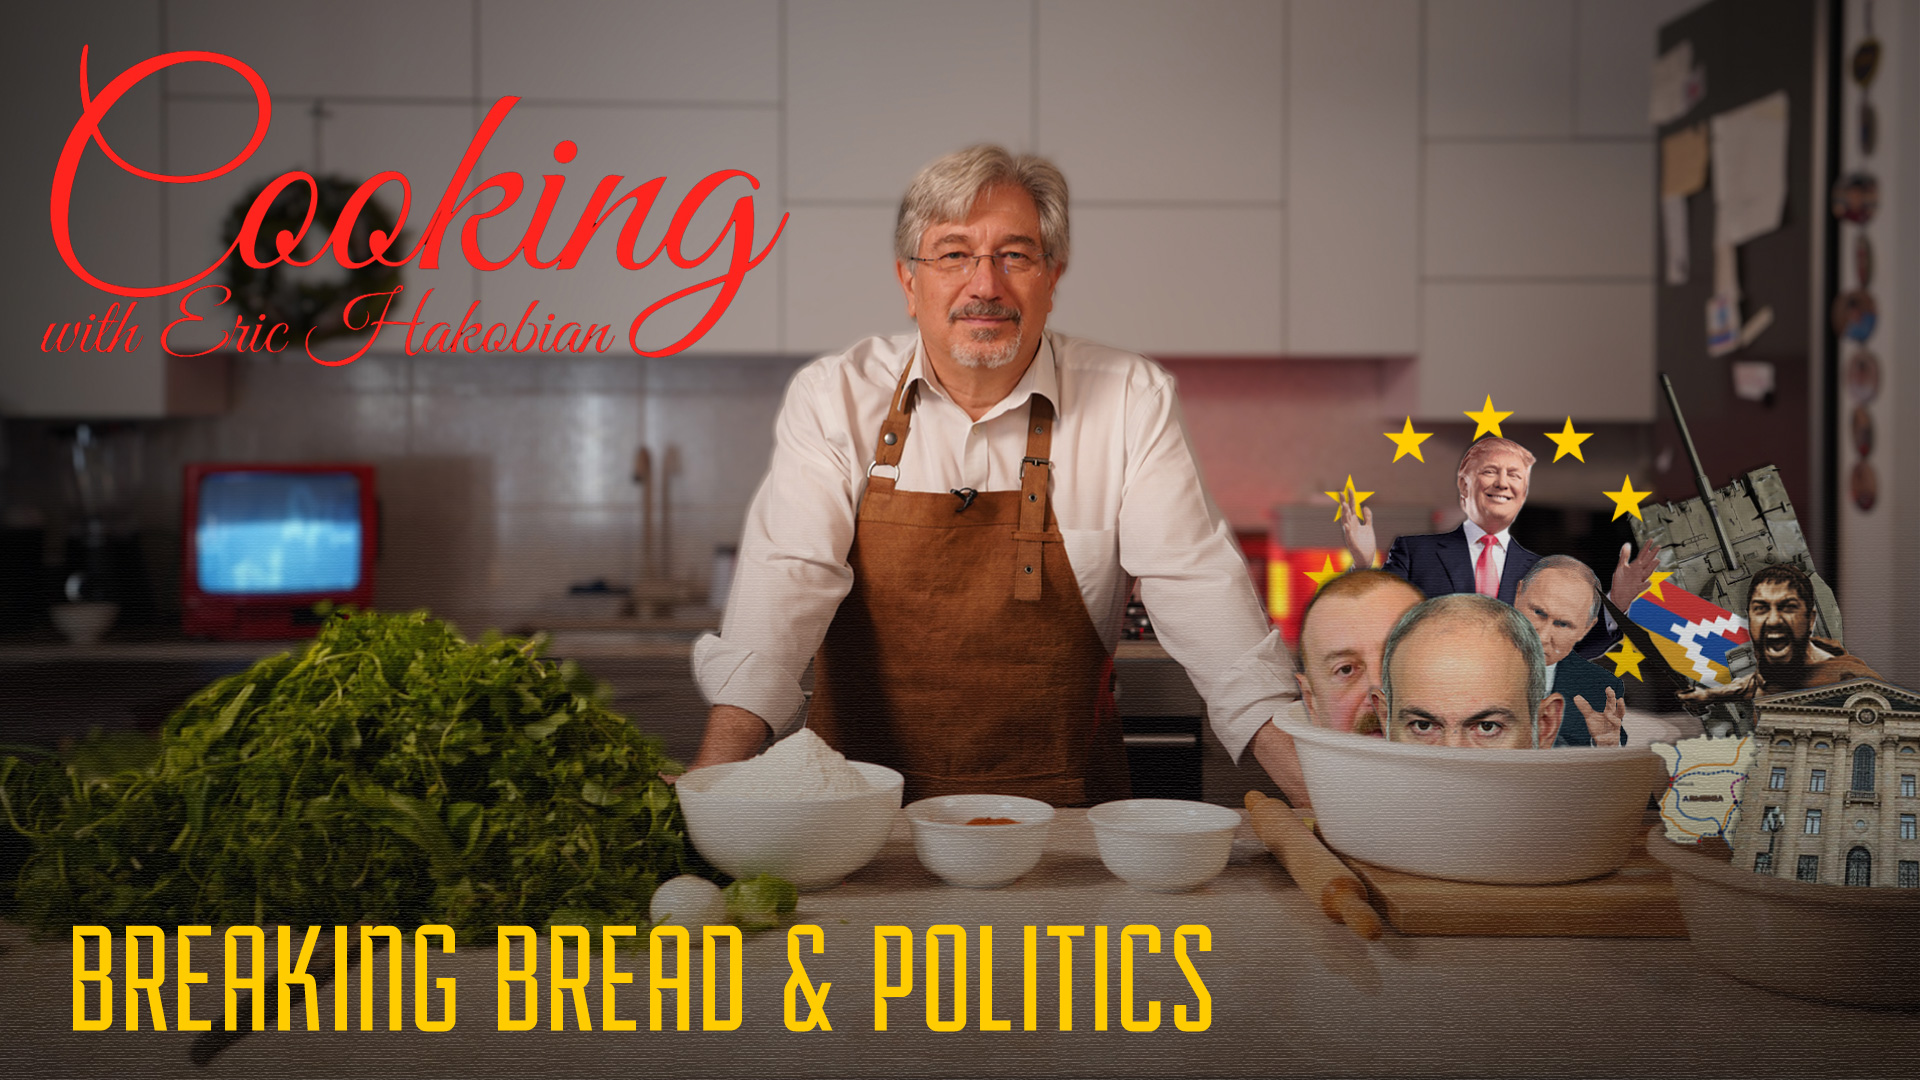 Erik-cooking1